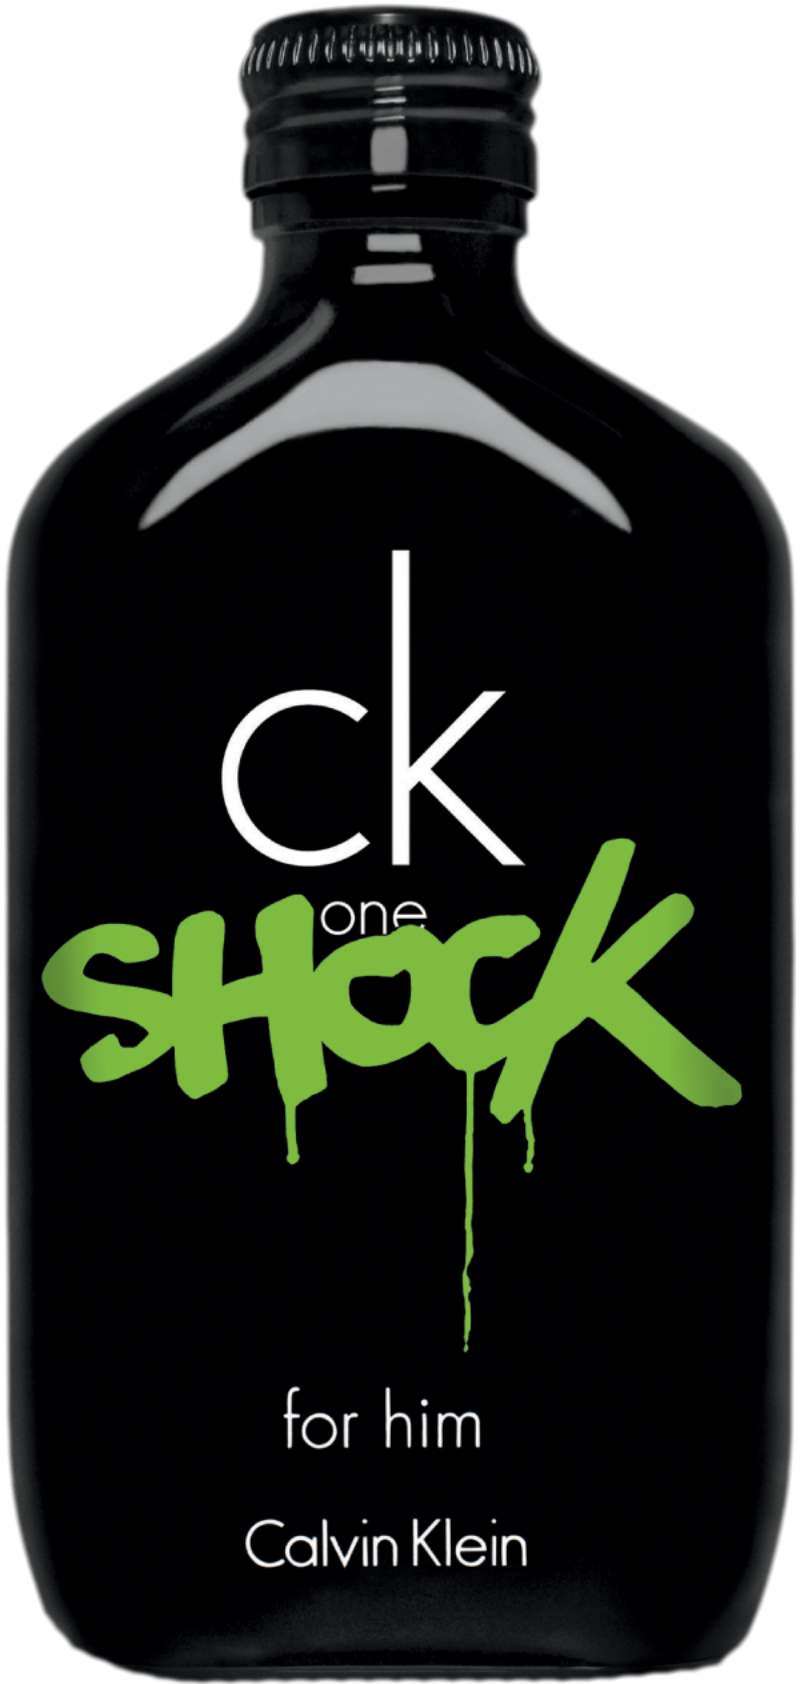 Calvin Klein - CK One Shock For Him EdT 100 ml